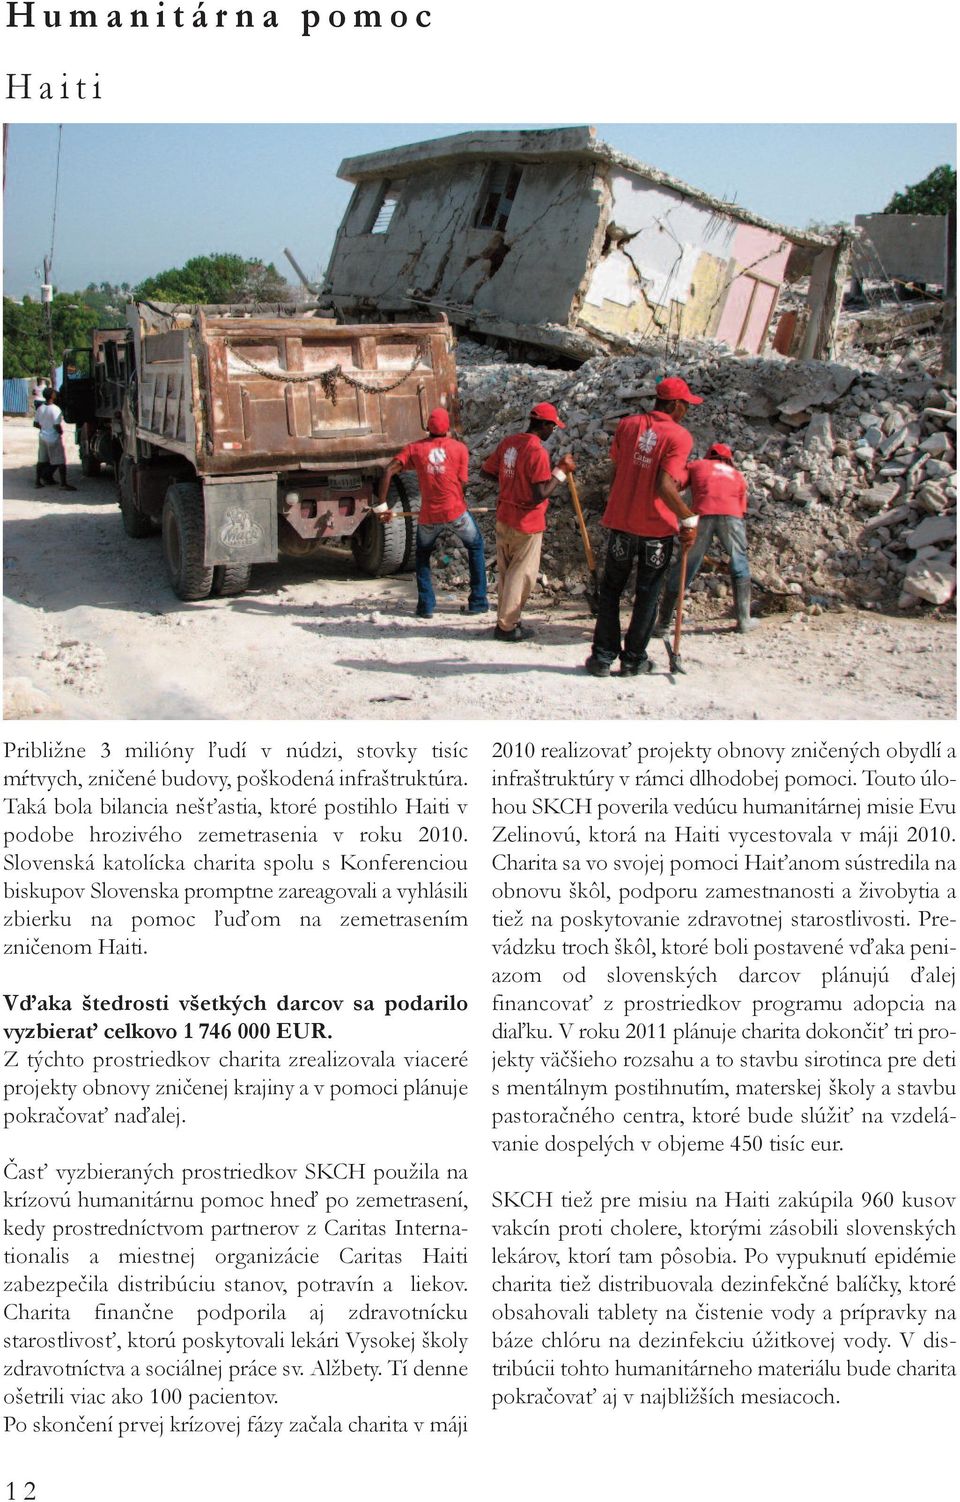 Slovenská katolícka charita spolu s Konferenciou biskupov Slovenska promptne zareagovali a vyhlásili zbierku na pomoc ľuďom na zemetrasením zničenom Haiti.